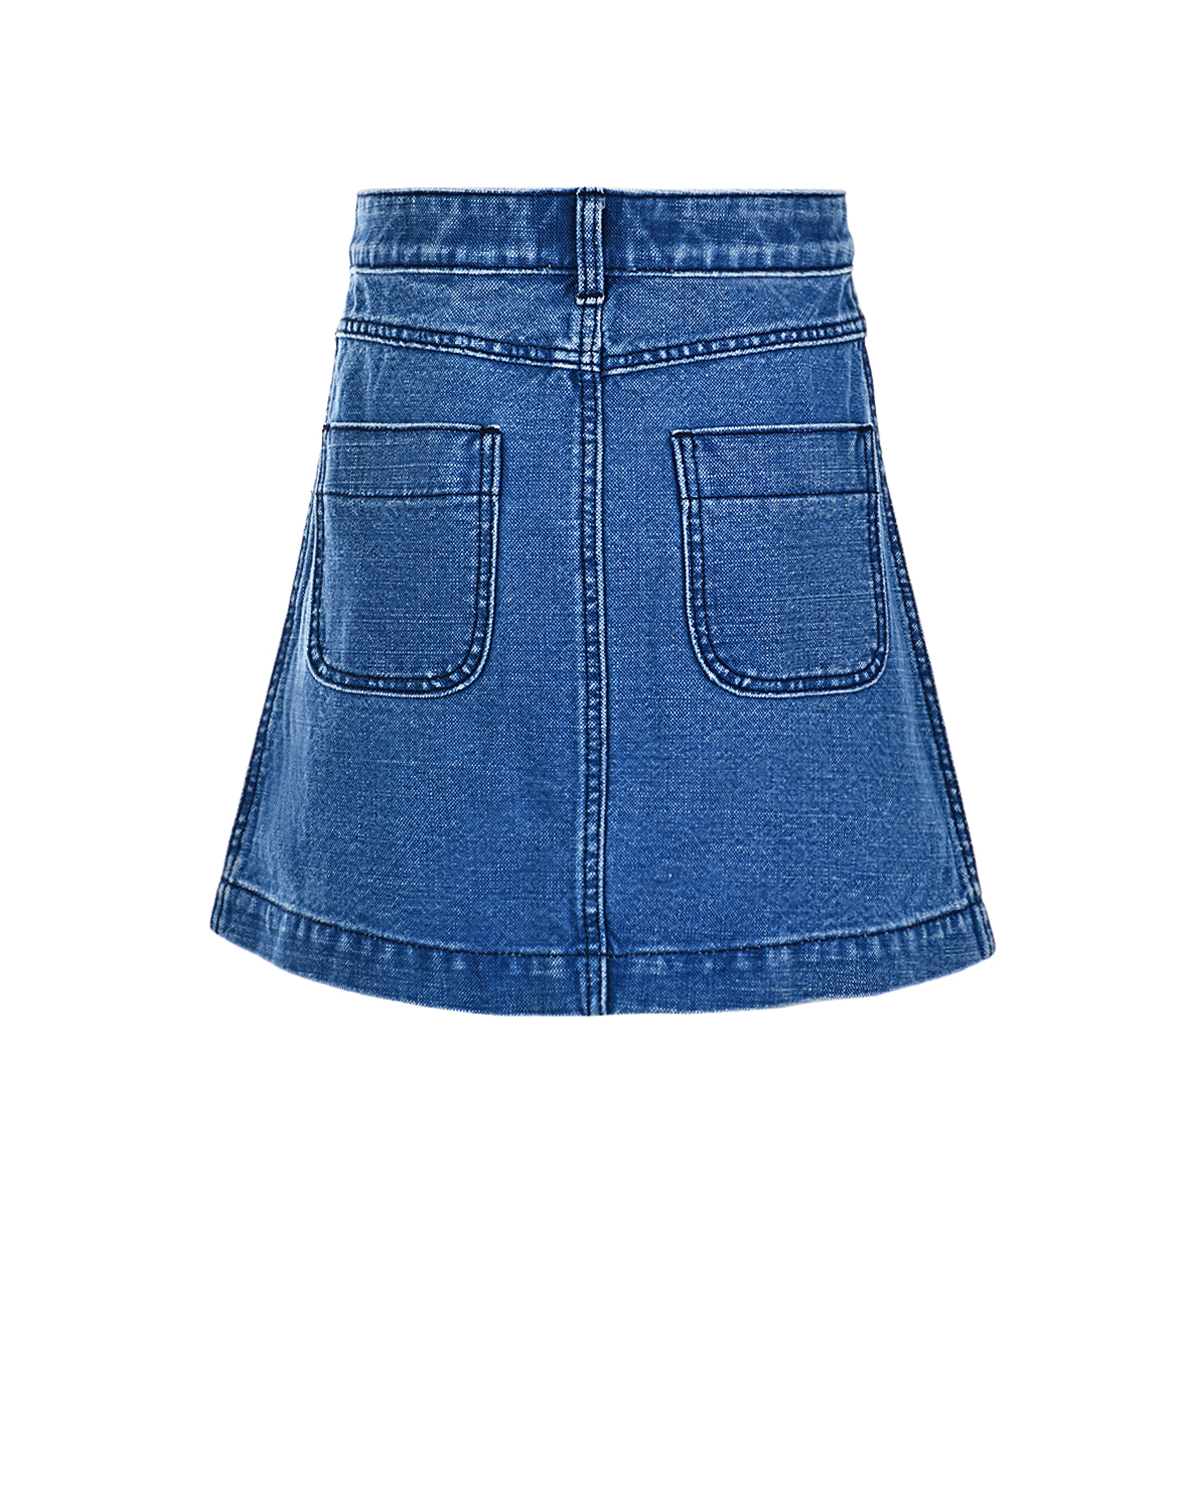 Джинсовая юбка с логотипом Burberry детская, размер 116, цвет синий - фото 3